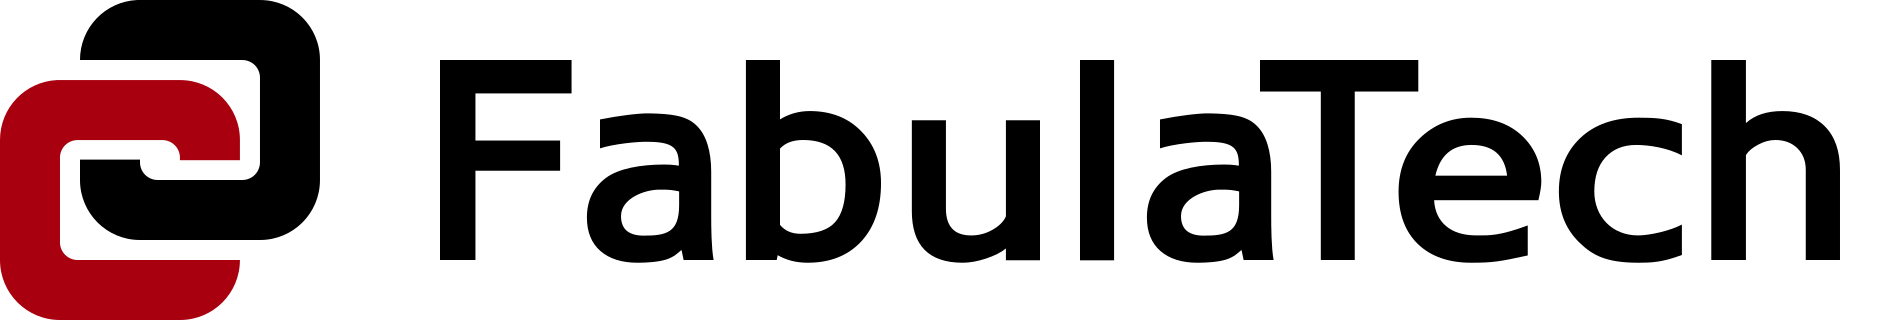 FabulaTech Logo PNG 1900x320